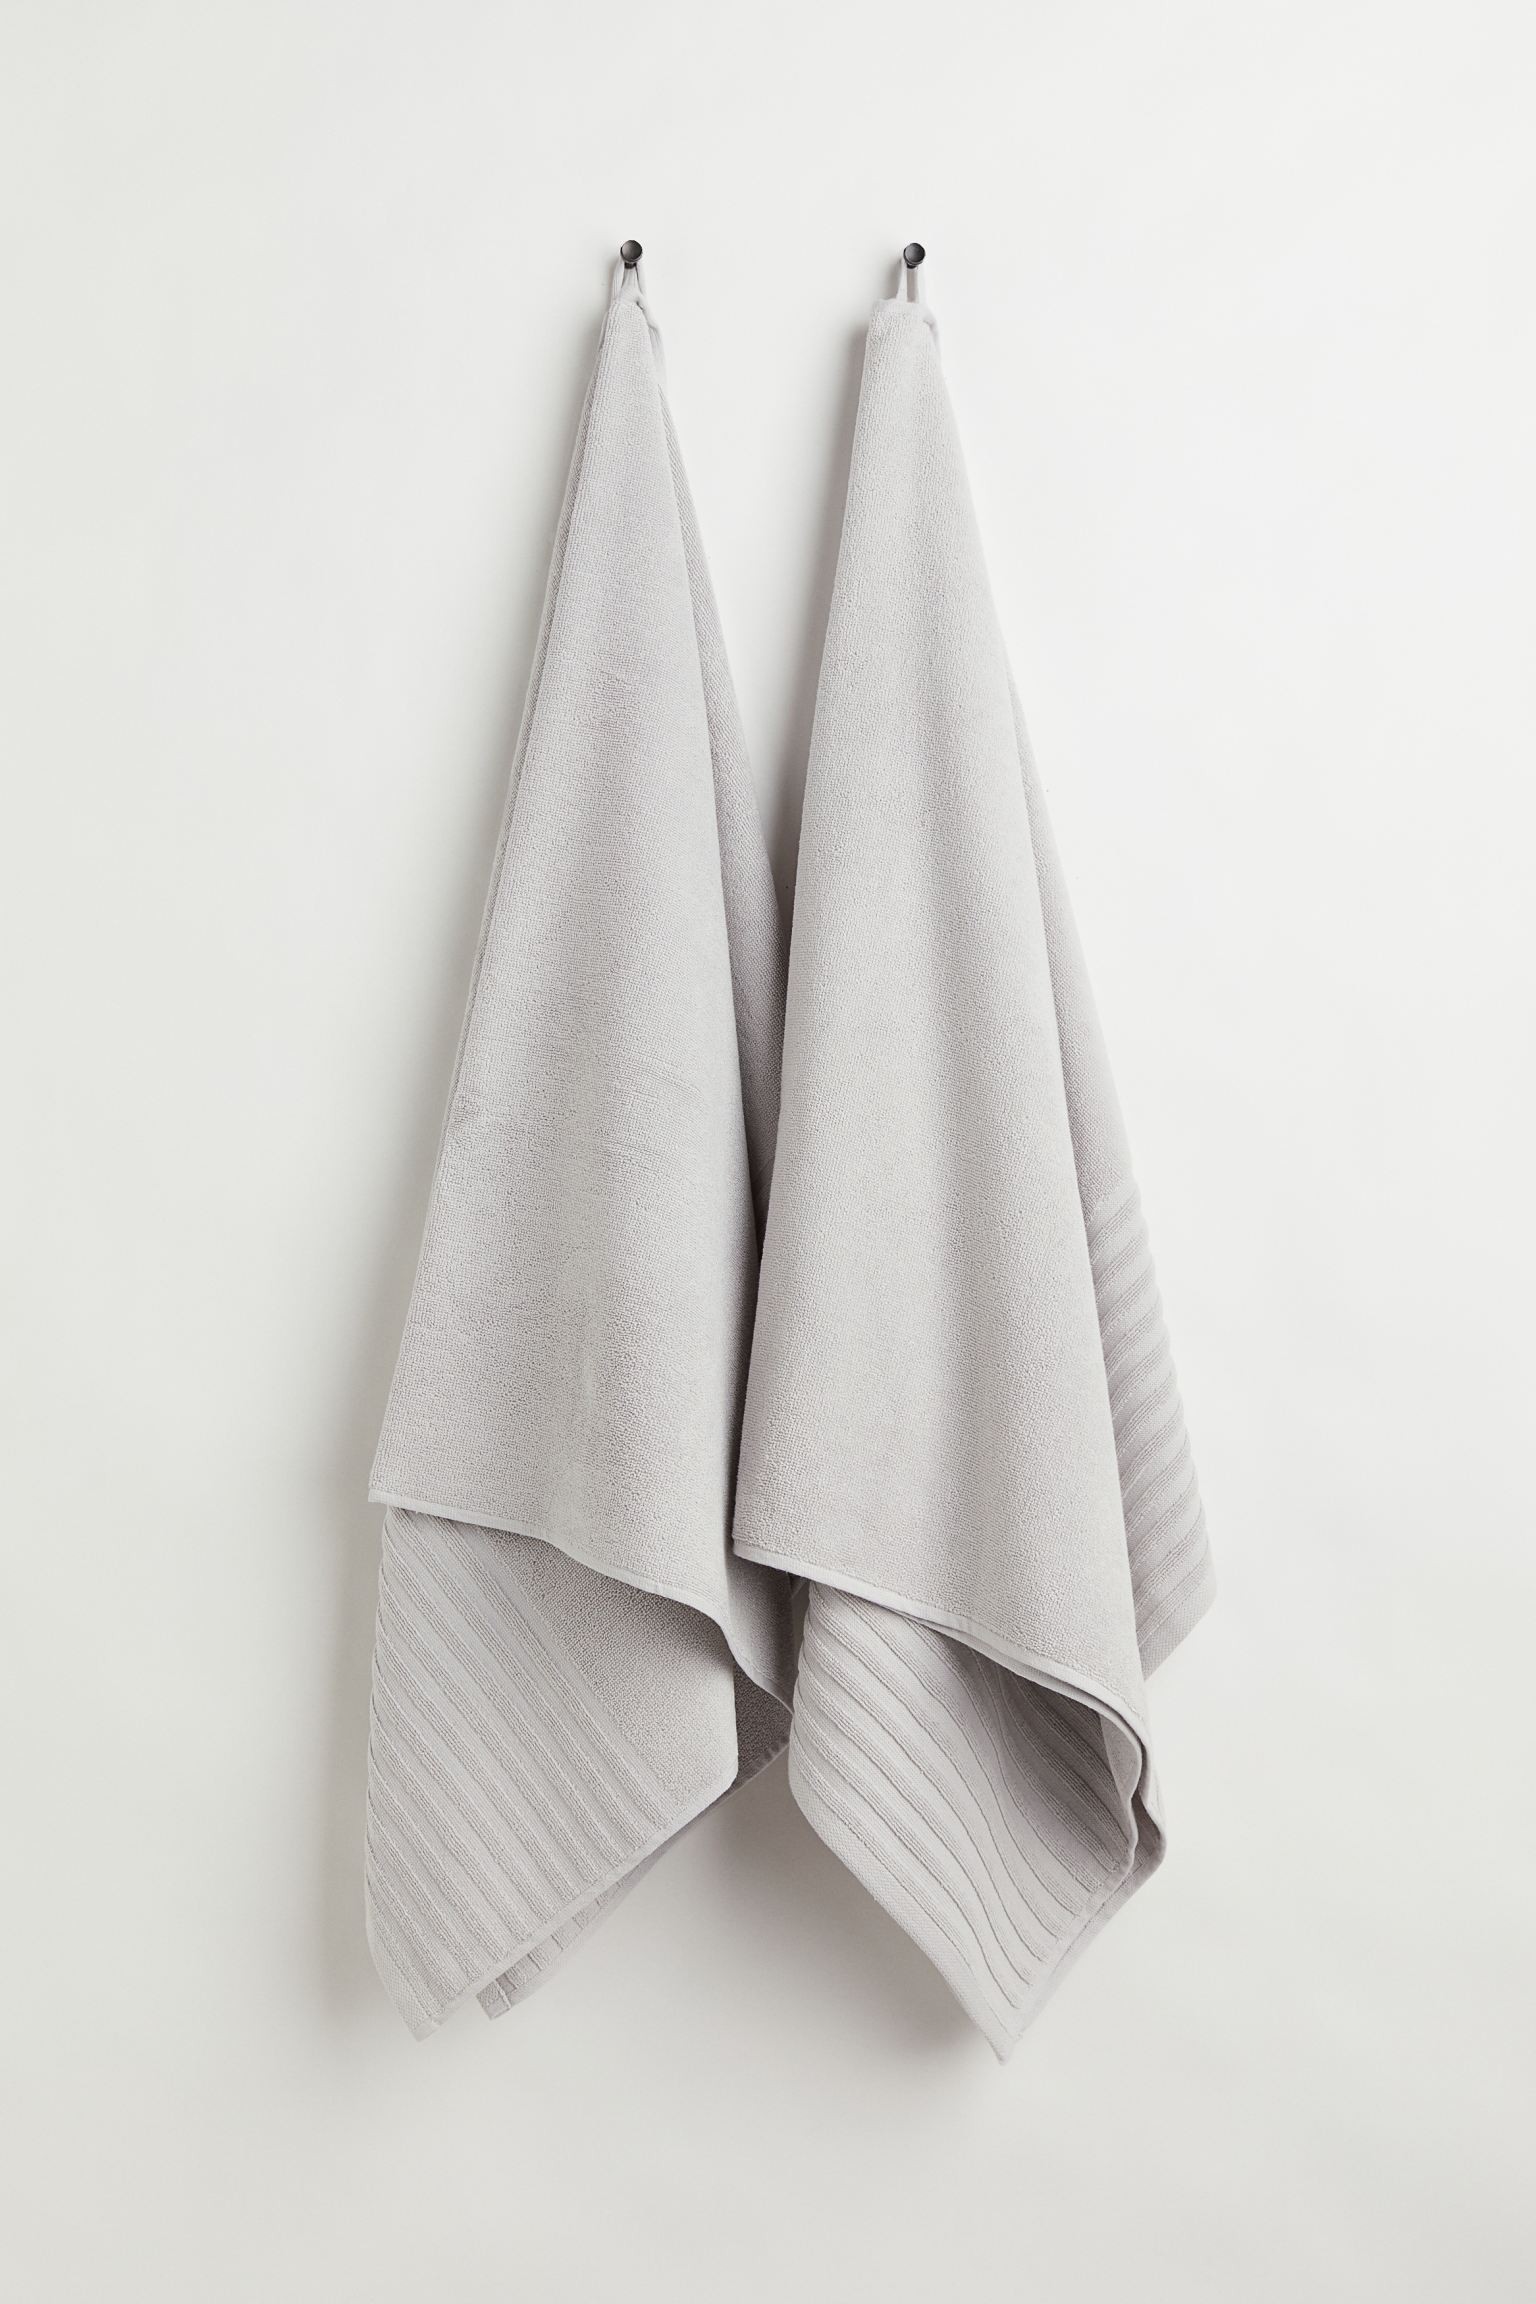 H&M Home Бавовняний банний рушник, 2 шт., світло сірий, 70x140 1025196005 1025196005